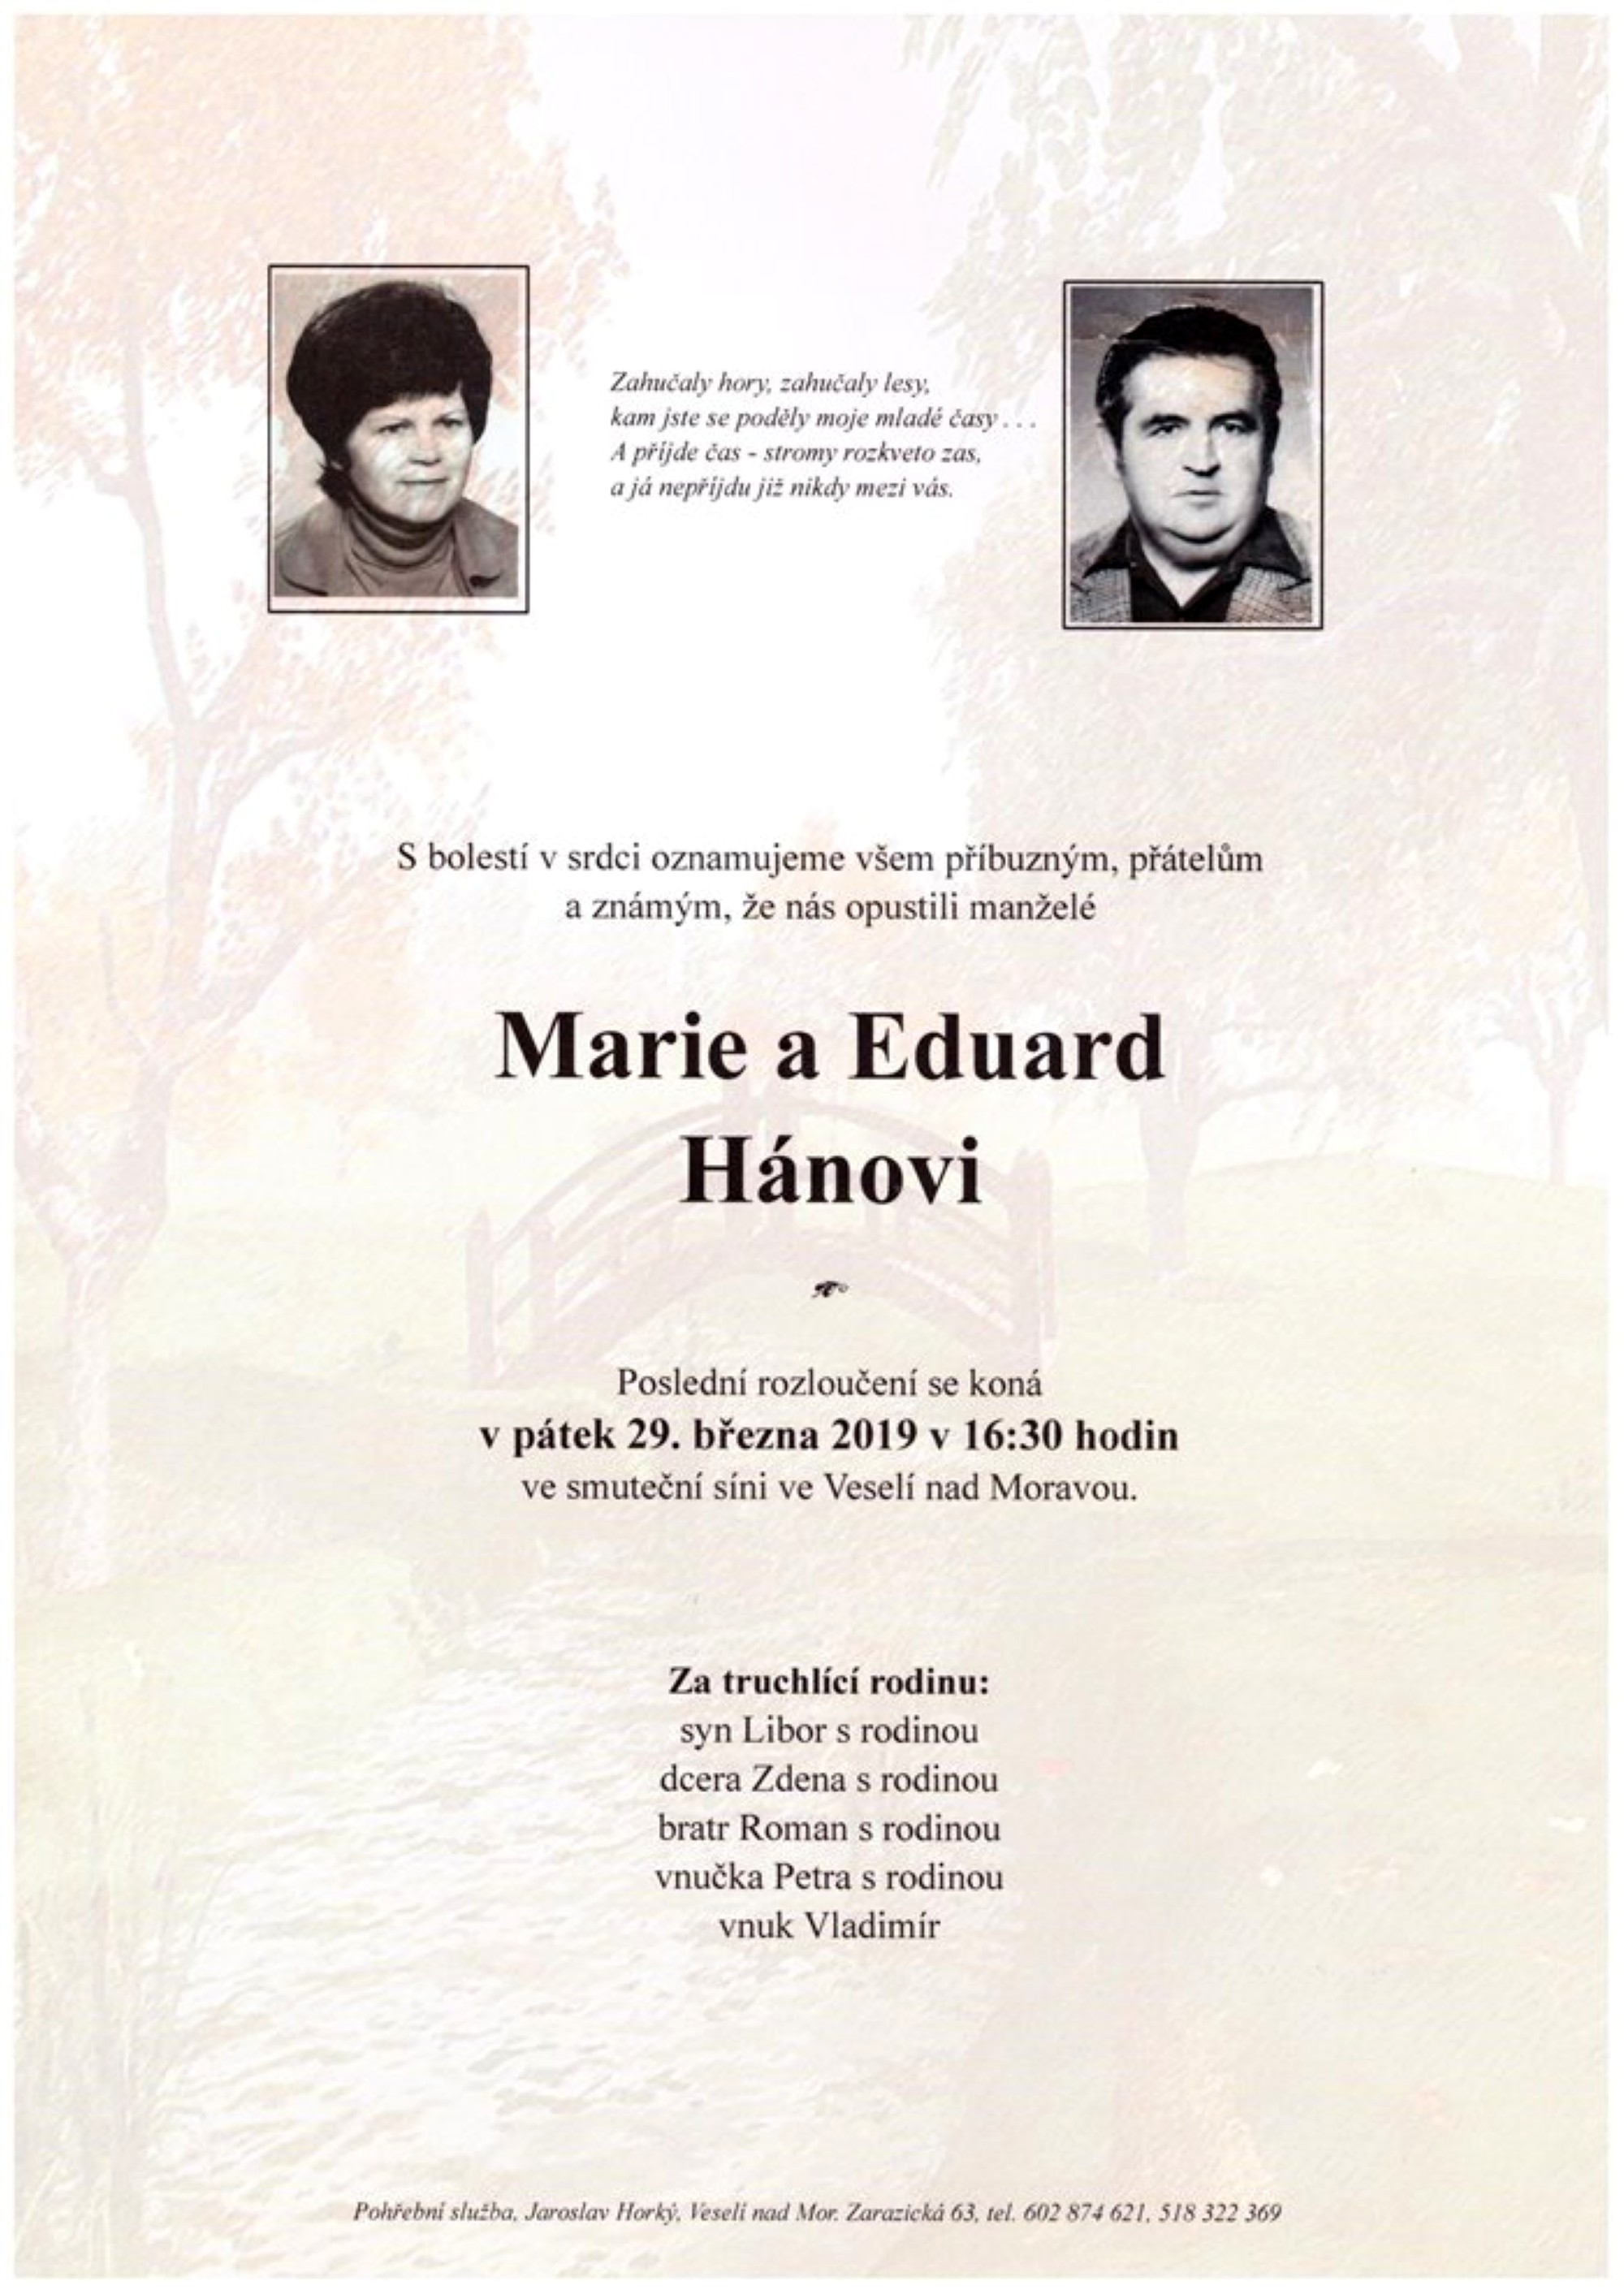 Marie a Eduard Hánovi